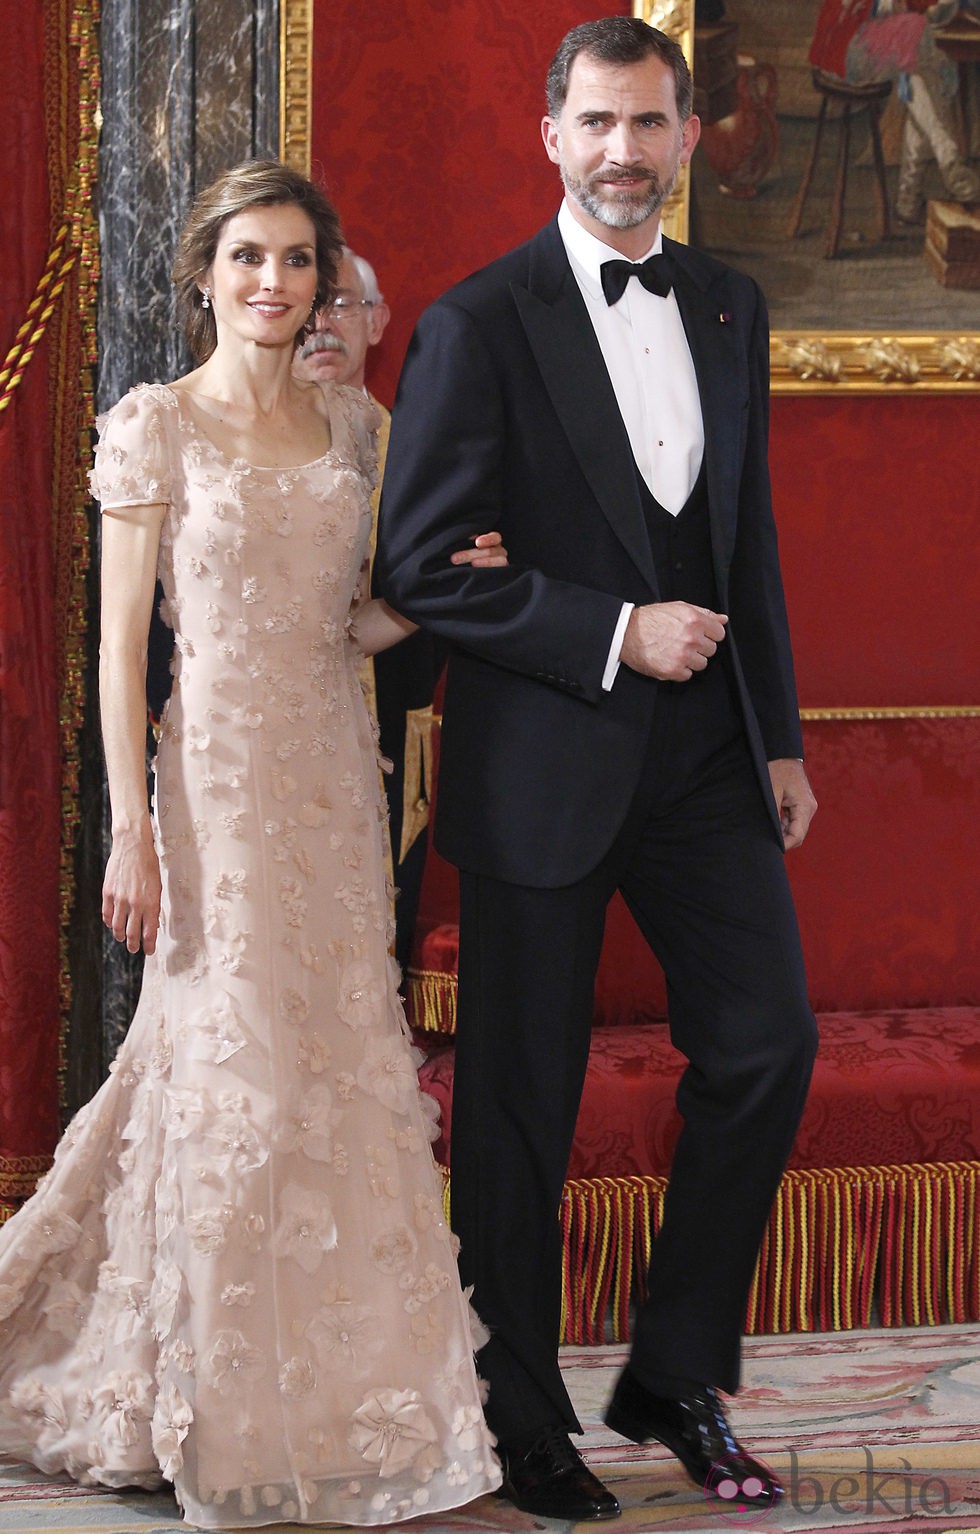 Los Príncipes Felipe y Letizia en la cena de gala en honor a Naruhito de Japón